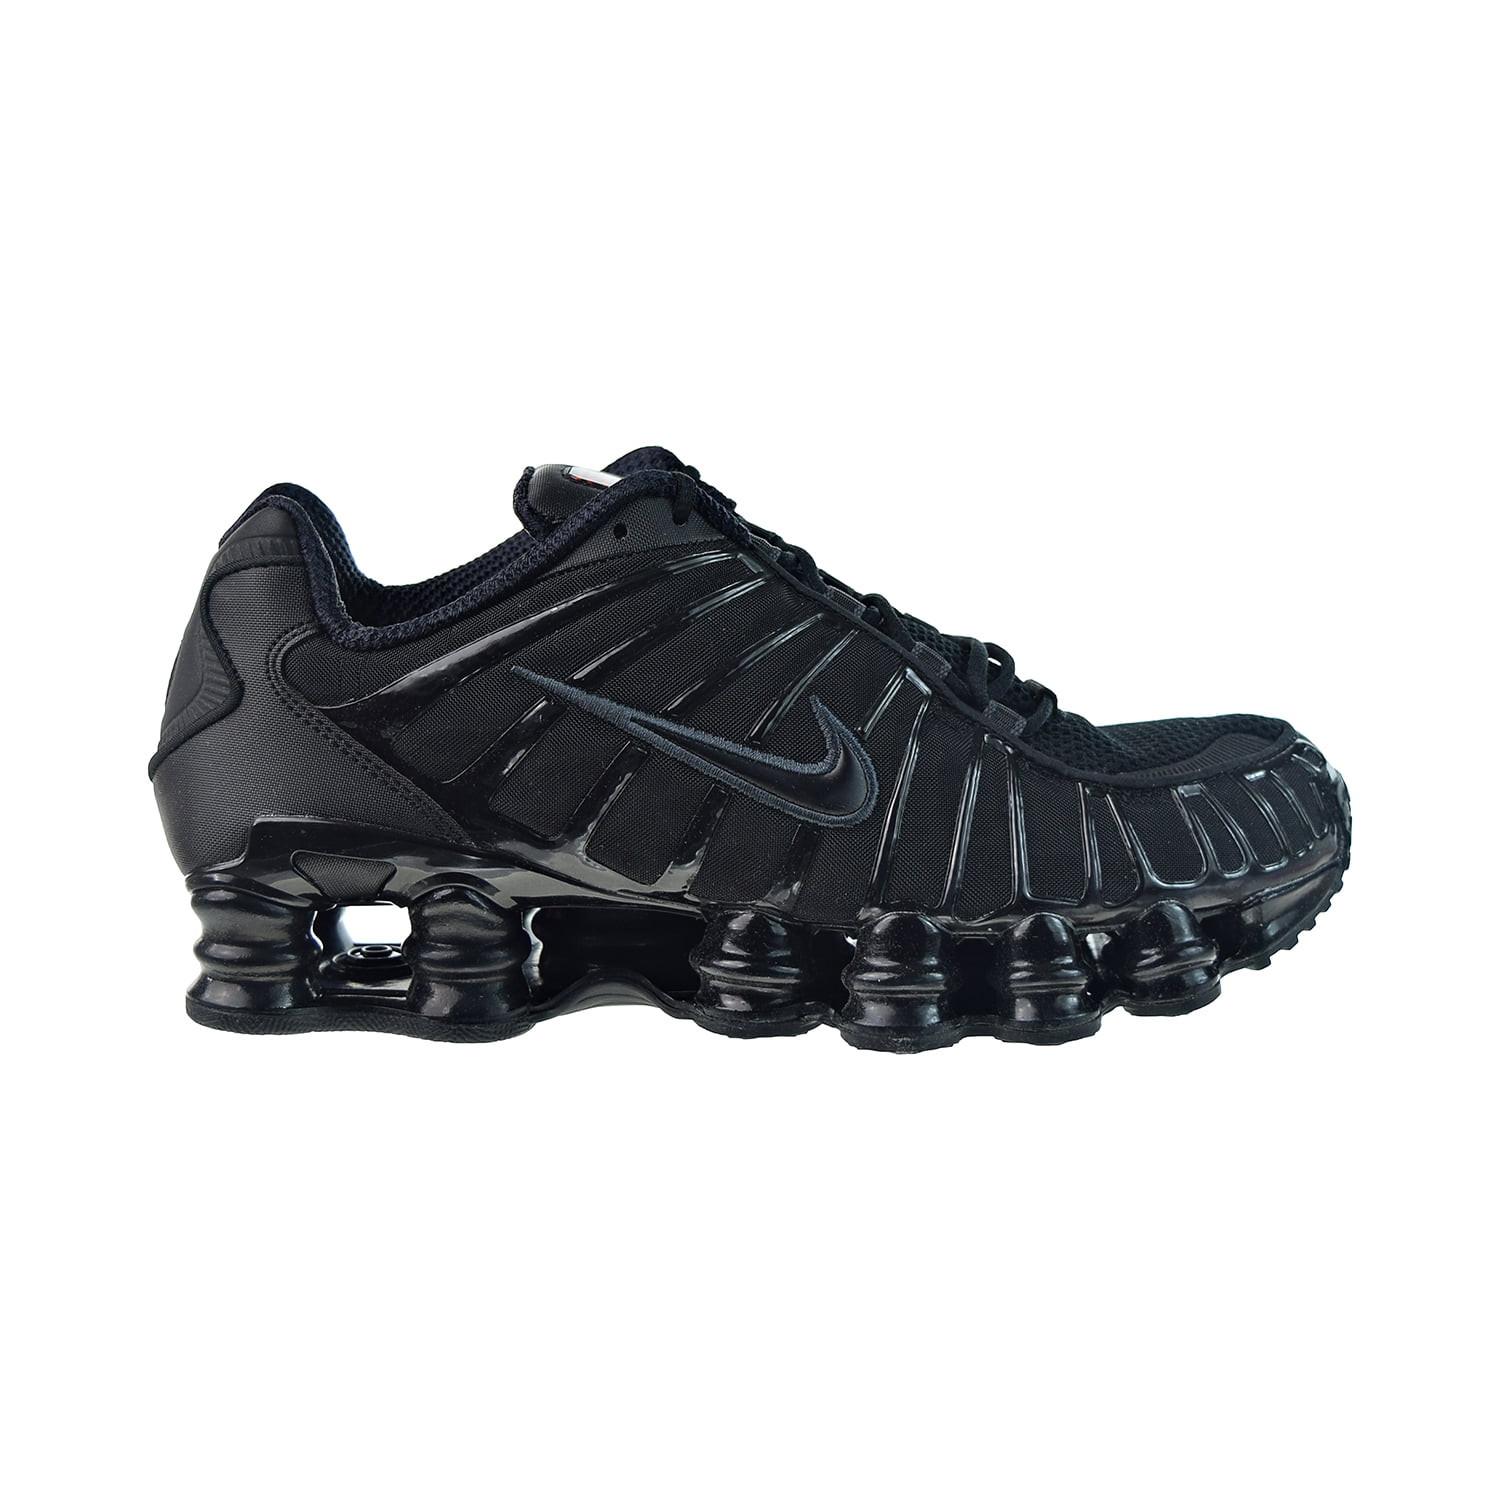 Nike Shox Tl Mens Shoes Black Metallic Hematite Max Orange Av3595 002